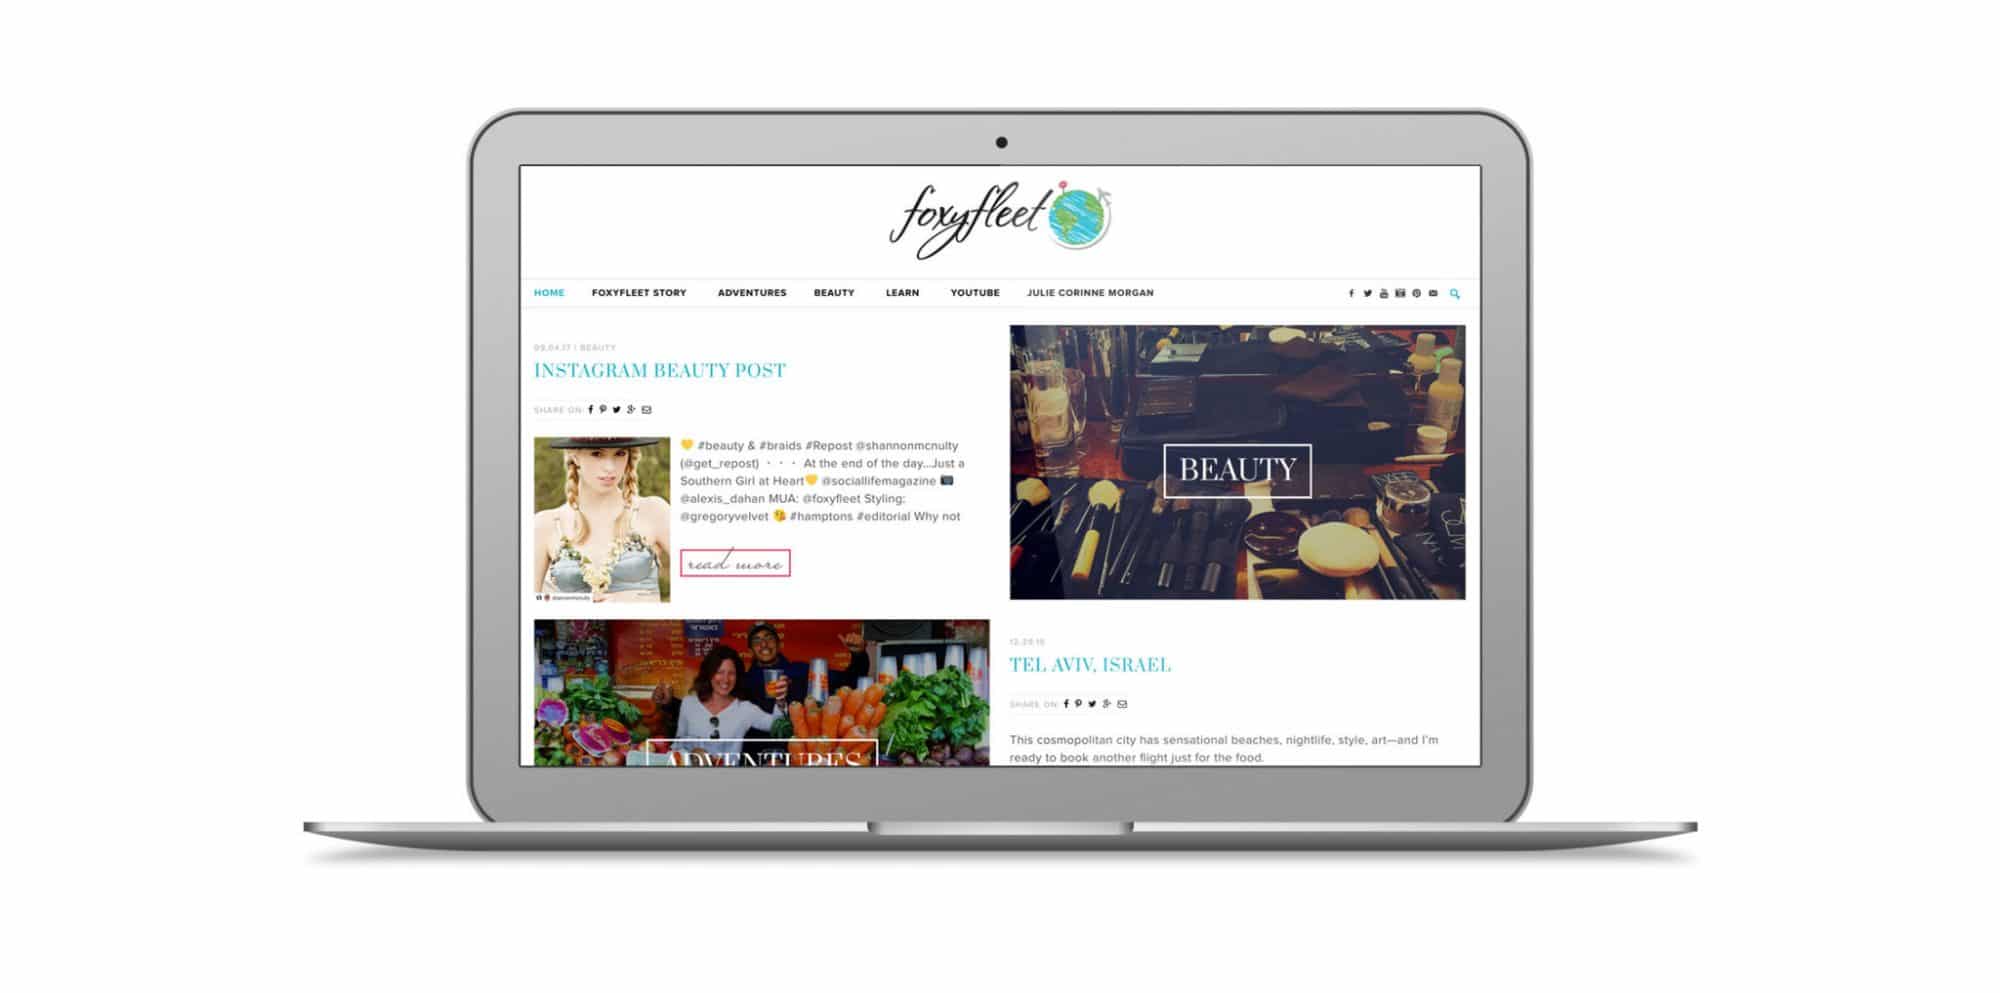 FoxyFleet Website Design by KStudioFX